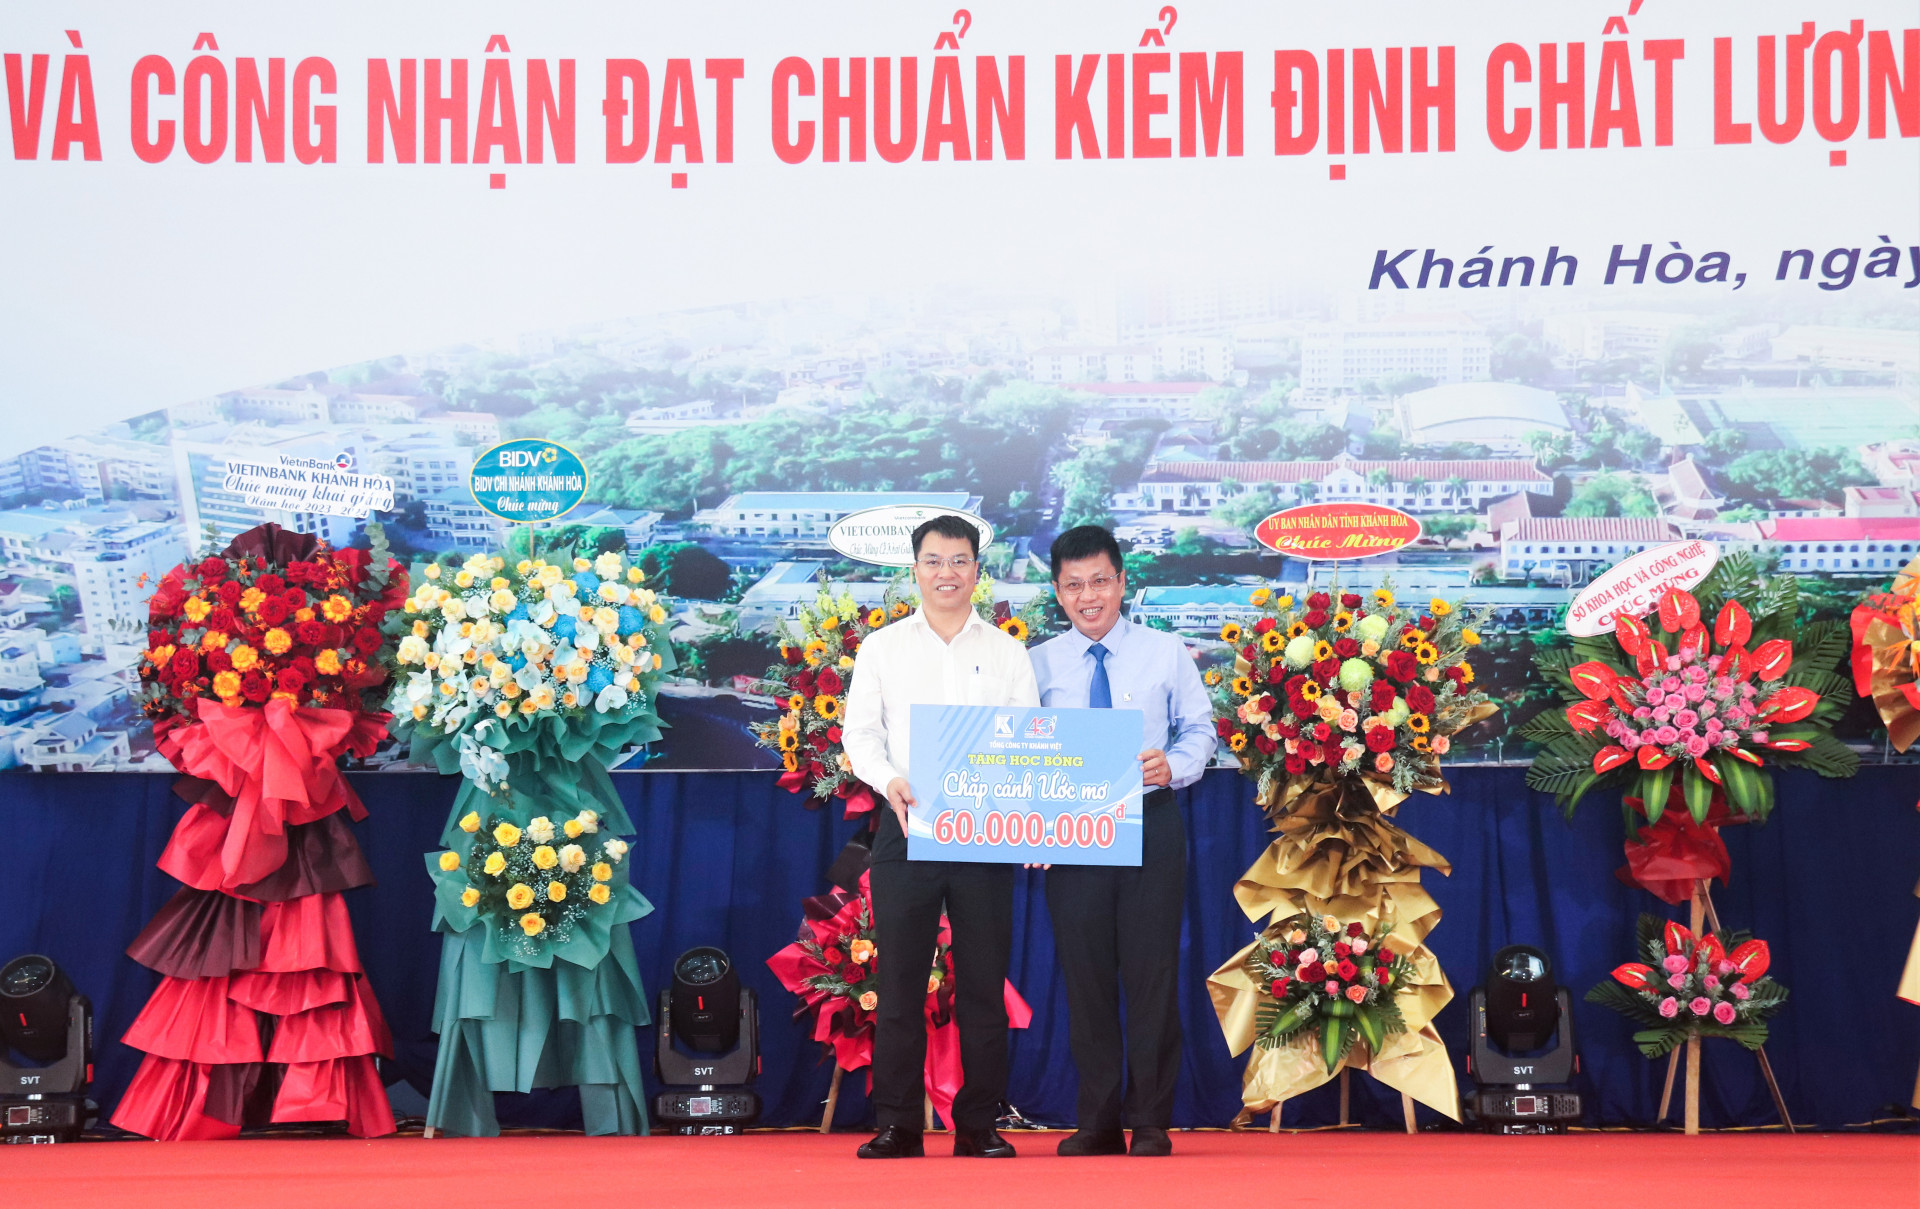 Ông Nguyễn Thành Tuyến - Phó Chủ tịch Công đoàn Tổng công ty Khánh Việt trao 20 suất học bổng “Chắp cánh ước mơ” cho trường Đại học Nha Trang